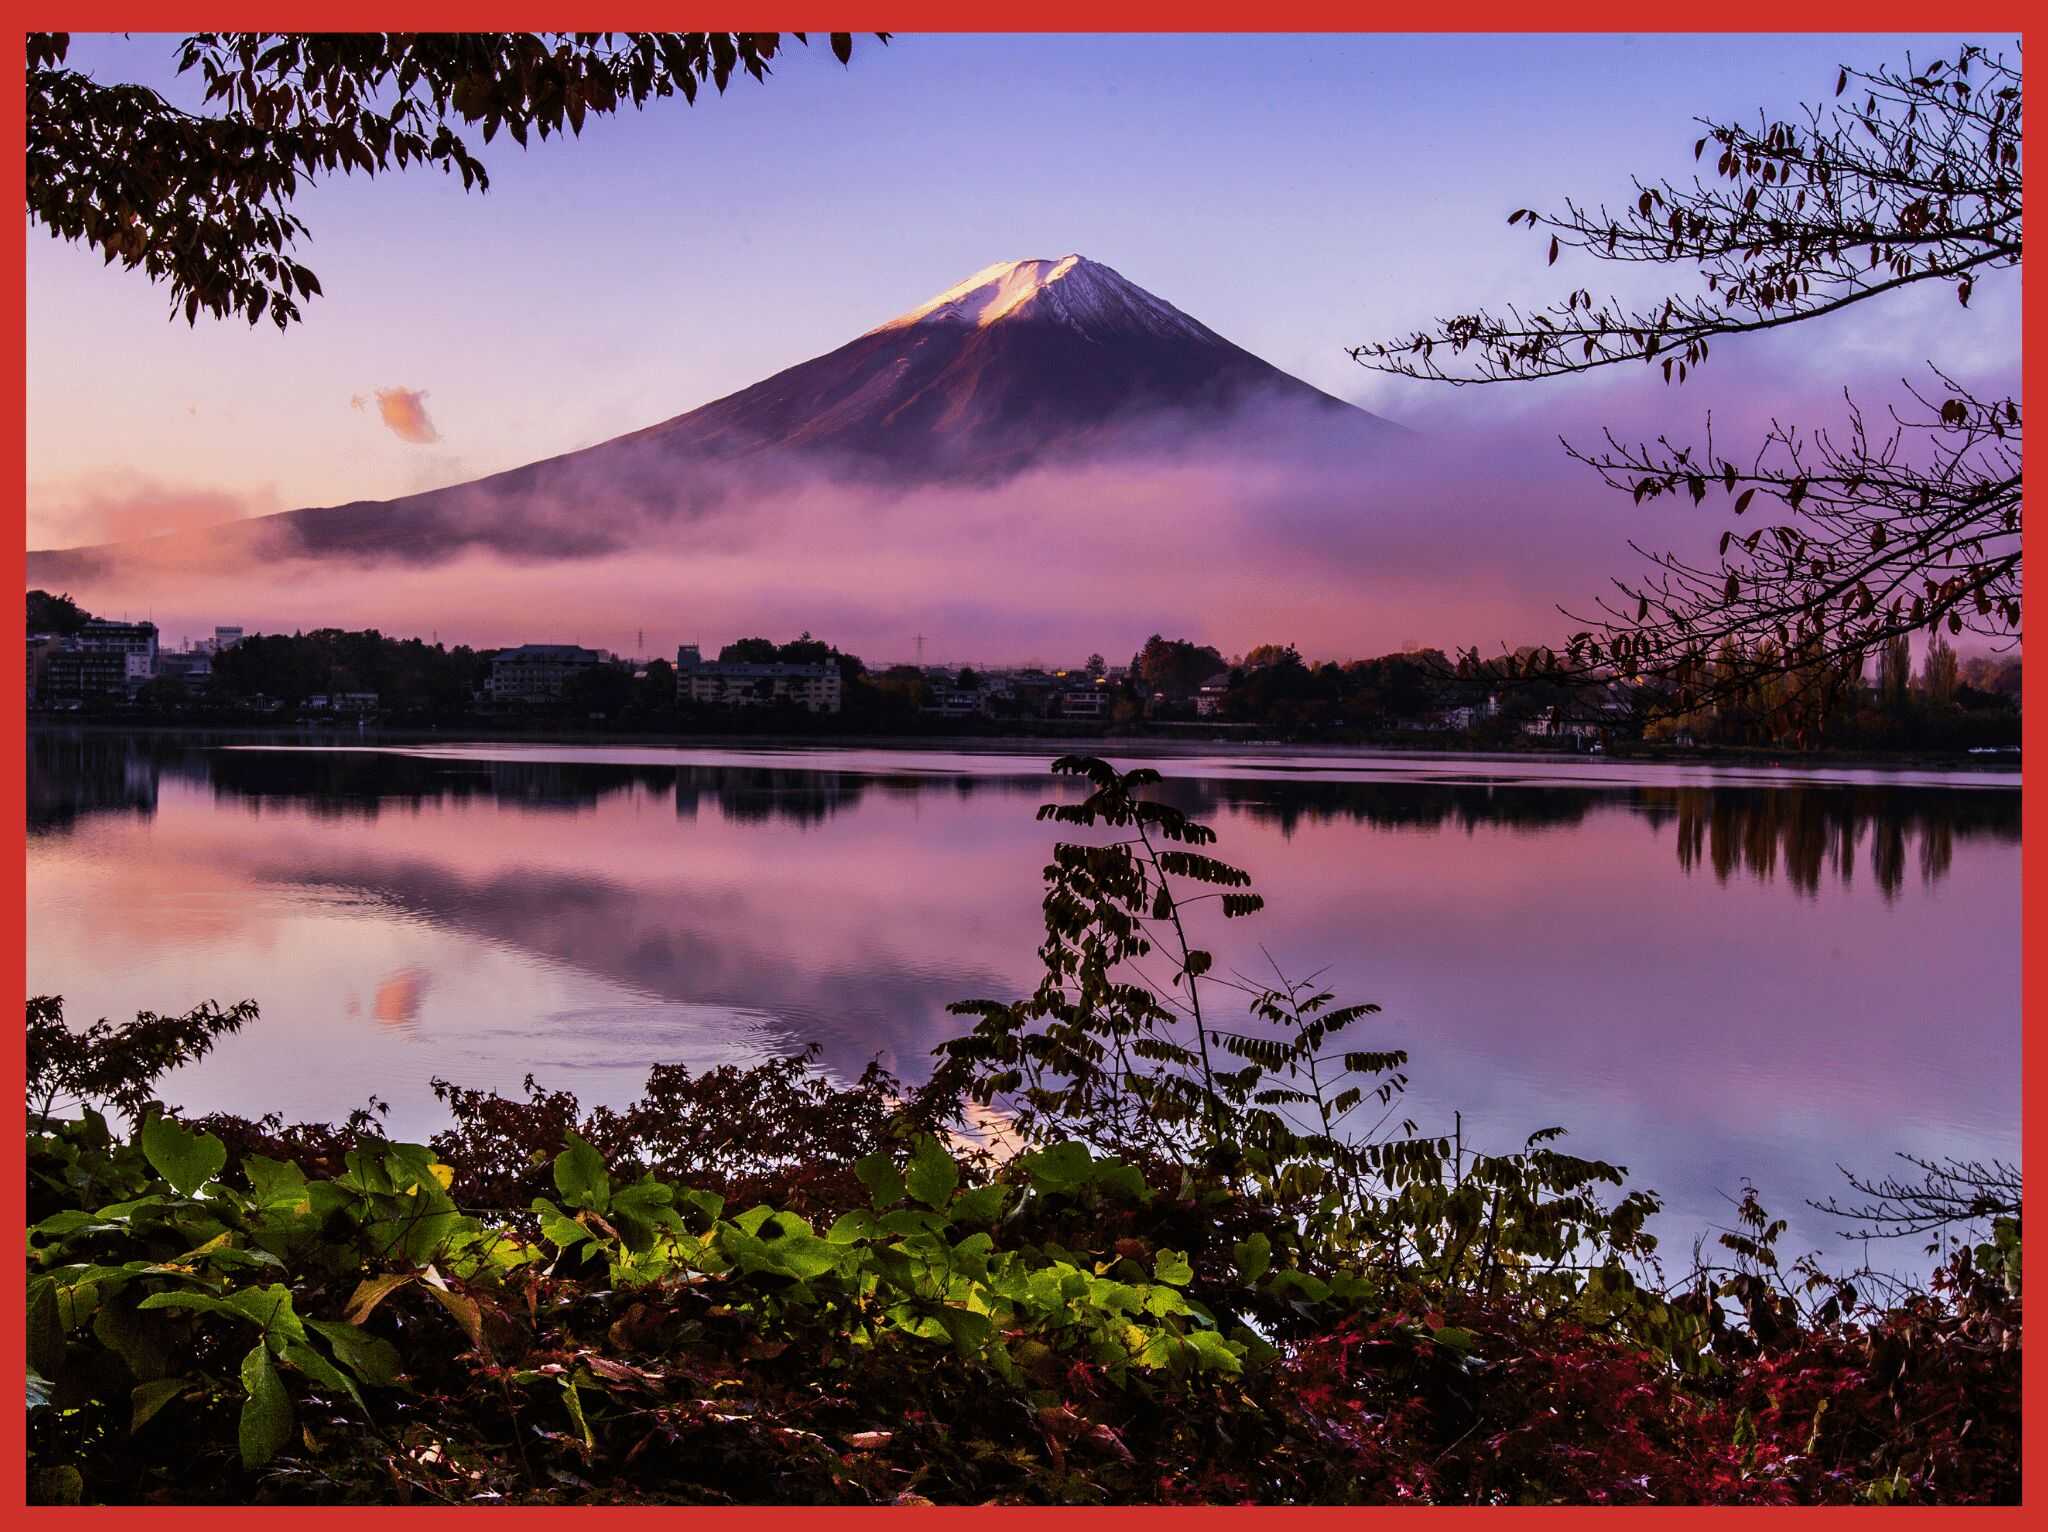 Japonia - co warto zobaczyć i jakie atrakcje odwiedzić? - blog 4challenge.org